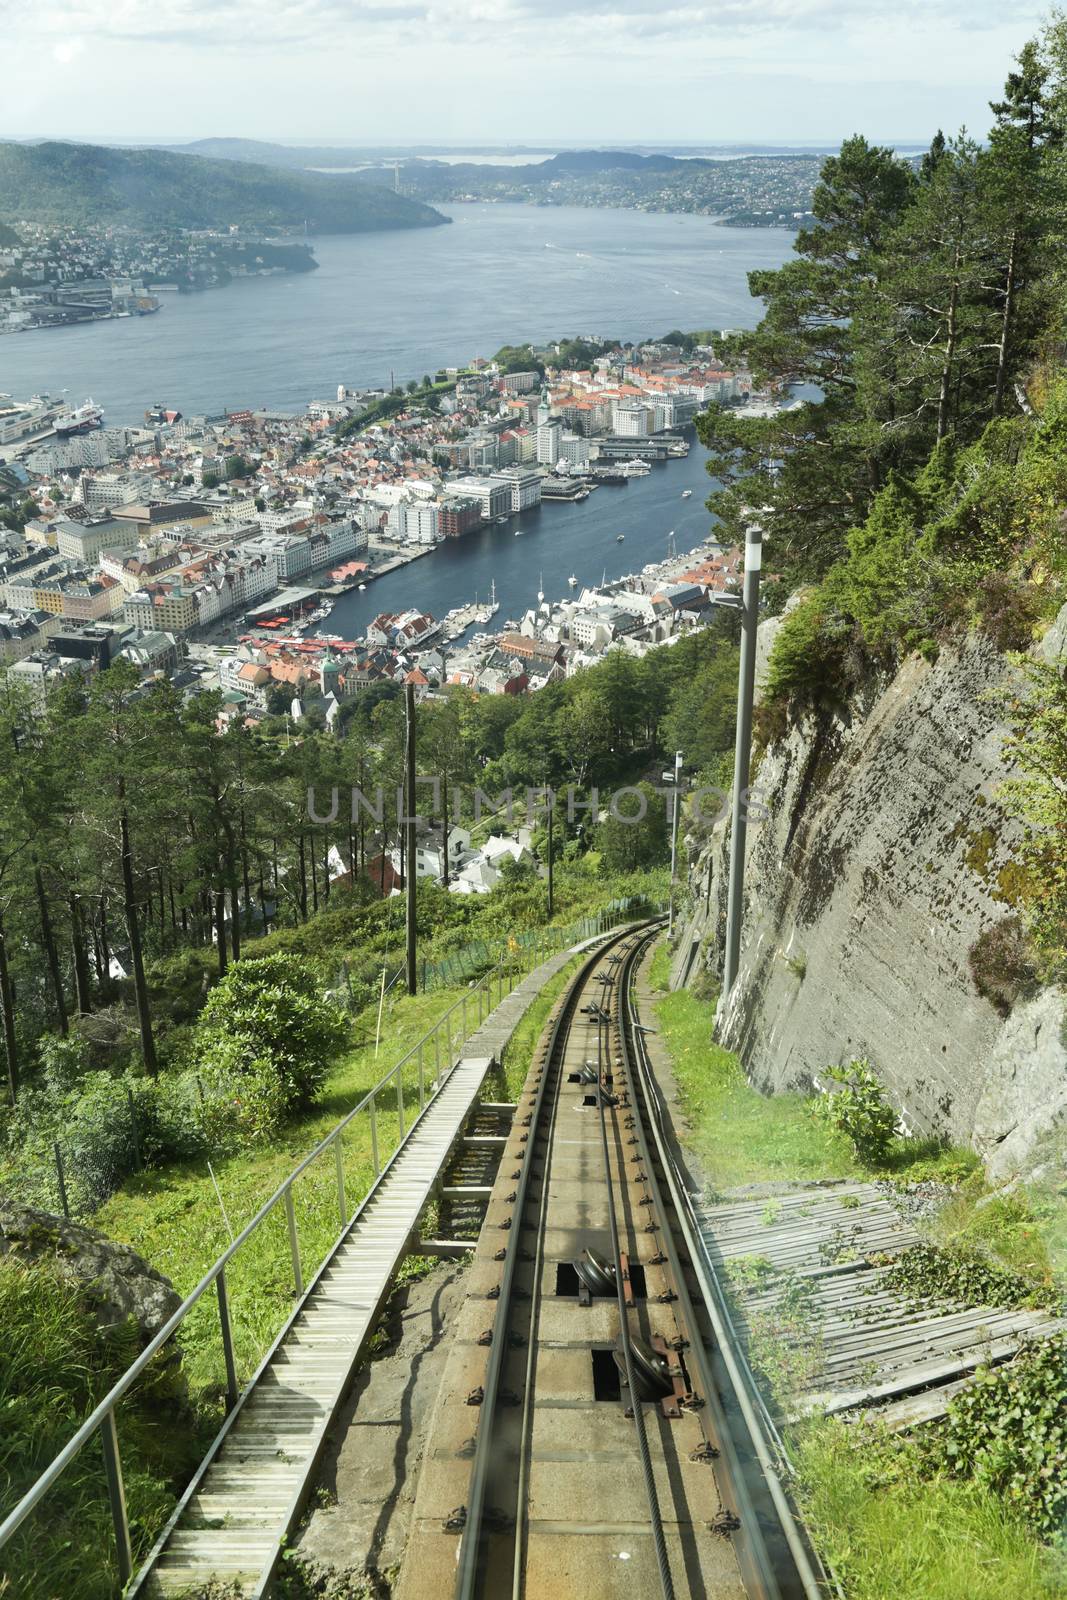 The Floibanen funicular to Mount Floyen at Bergen City